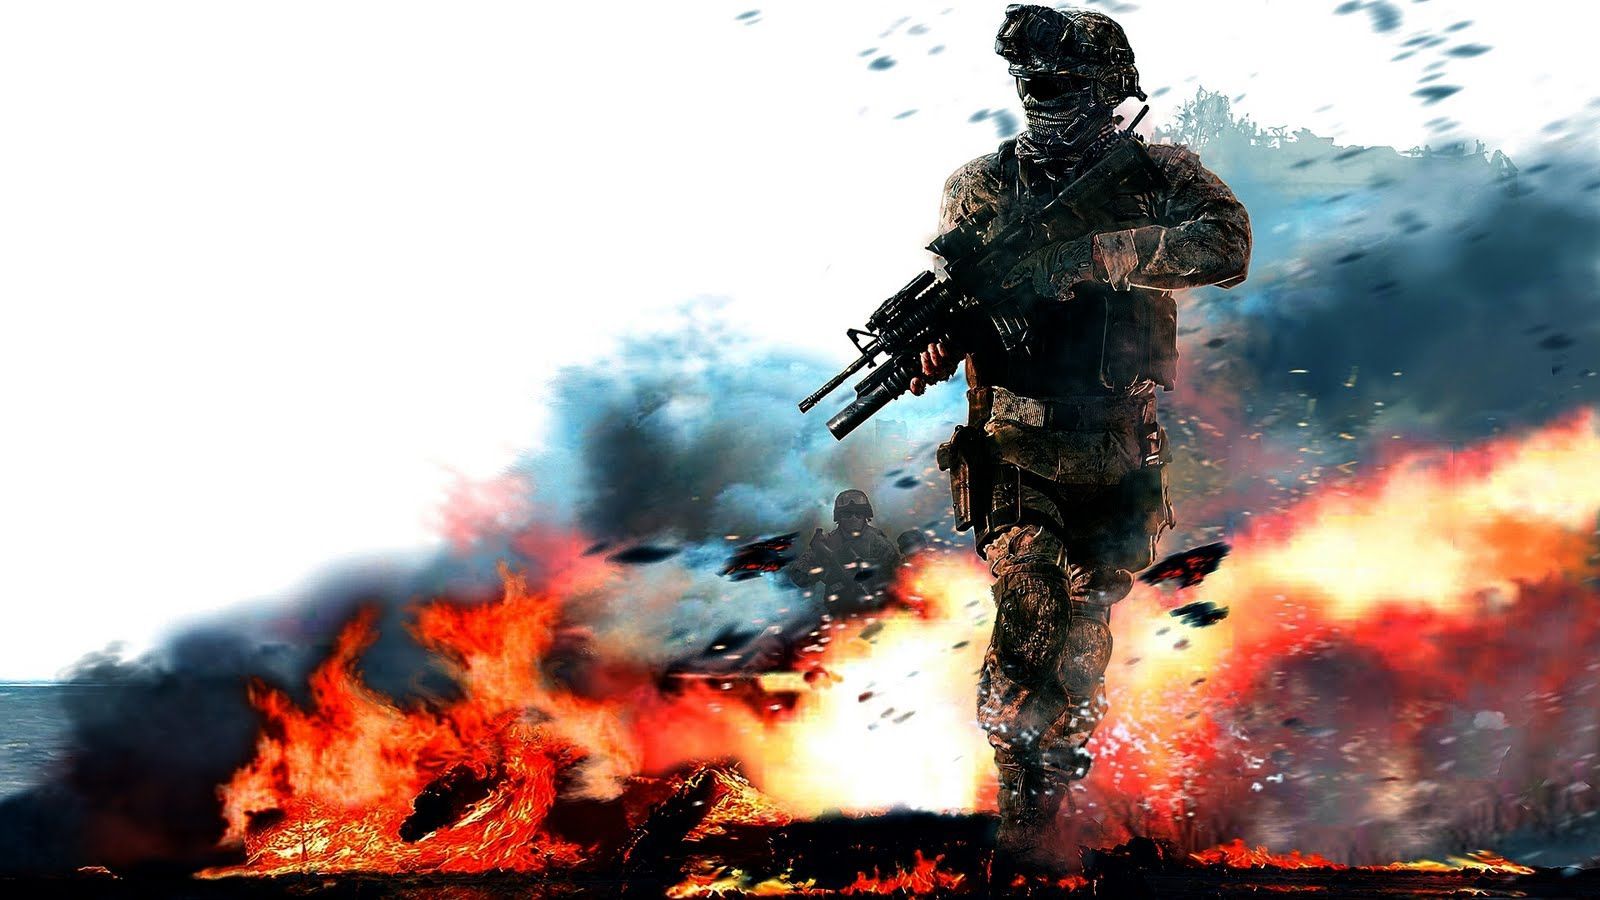 Call Of Duty Fire War Wallpaper Computer Deskt #8896 Wallpaper ...